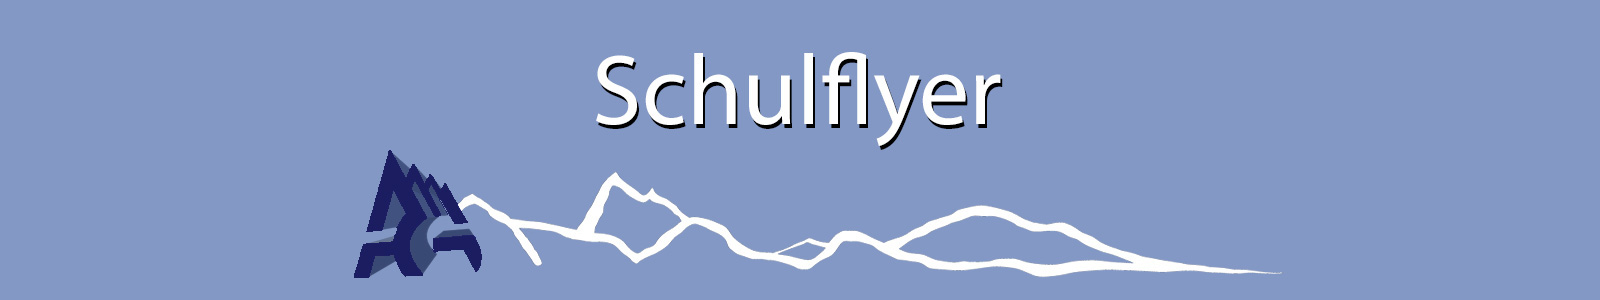 Banner Schulflyer